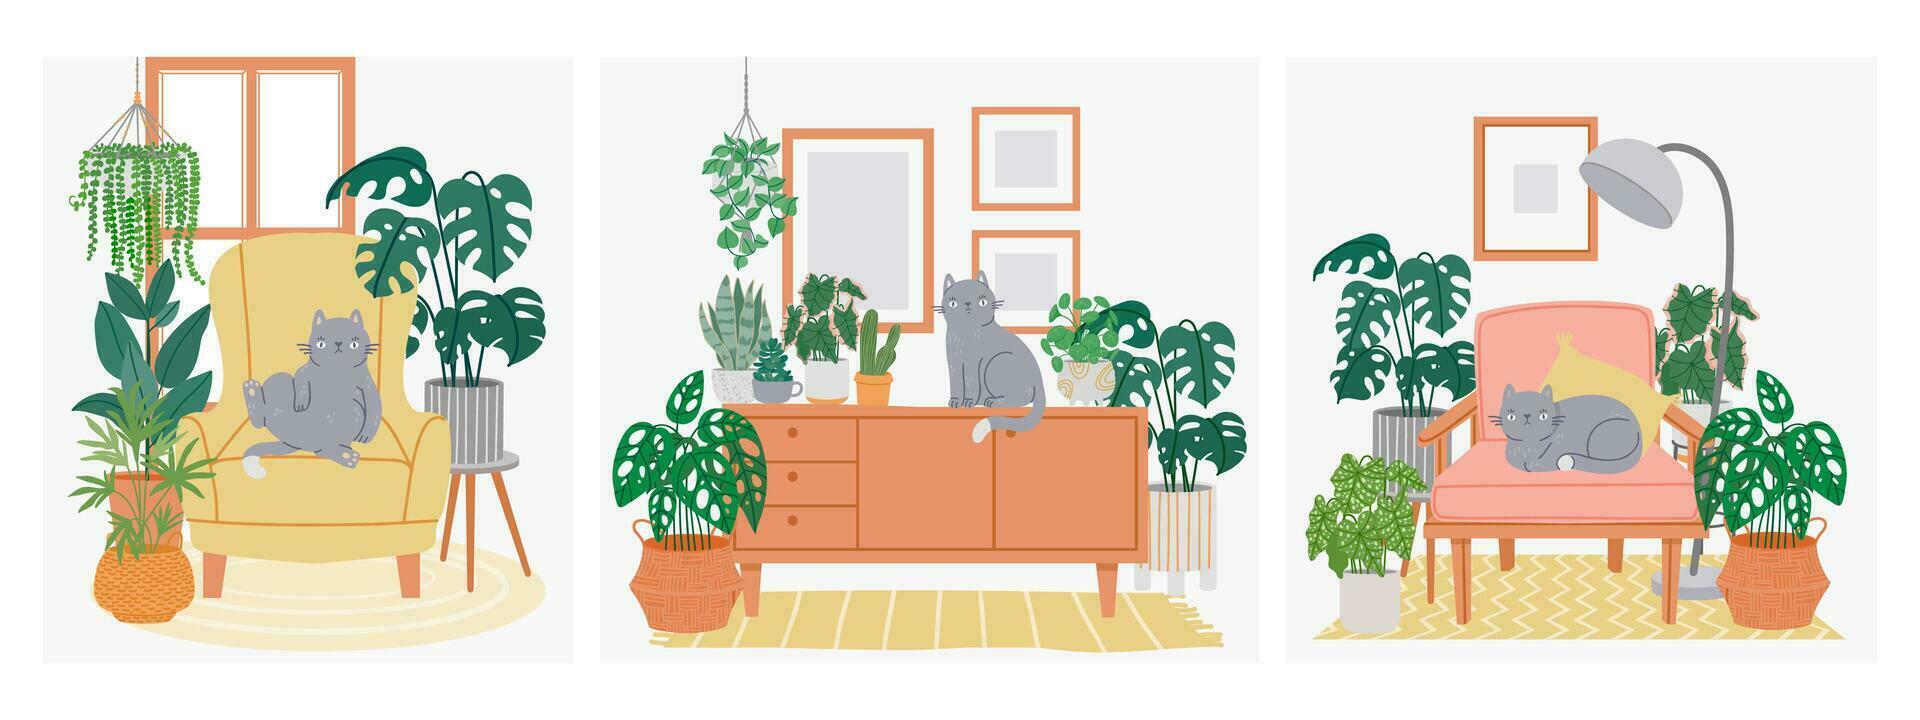 Innere mit Katze und Zimmerpflanzen. Komposition mit gemütlich heim, entspannend Haustier Katzen auf Sessel und Schrank mit Blume und Töpfe. Hygge Zimmer. Vektor Illustration